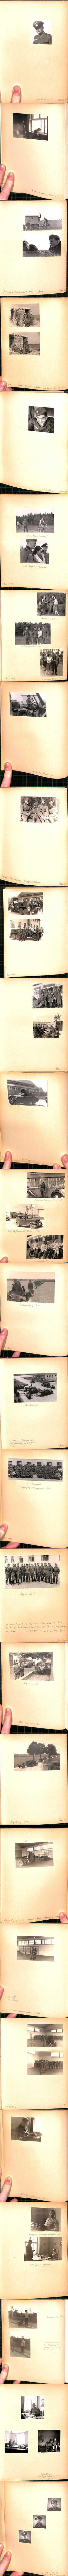 (a68593)   Fotoalbum 2. Weltkrieg Jahr 1940, 44 Fotos, ua Bunker, Fahrzeuge - Bild 1 von 1